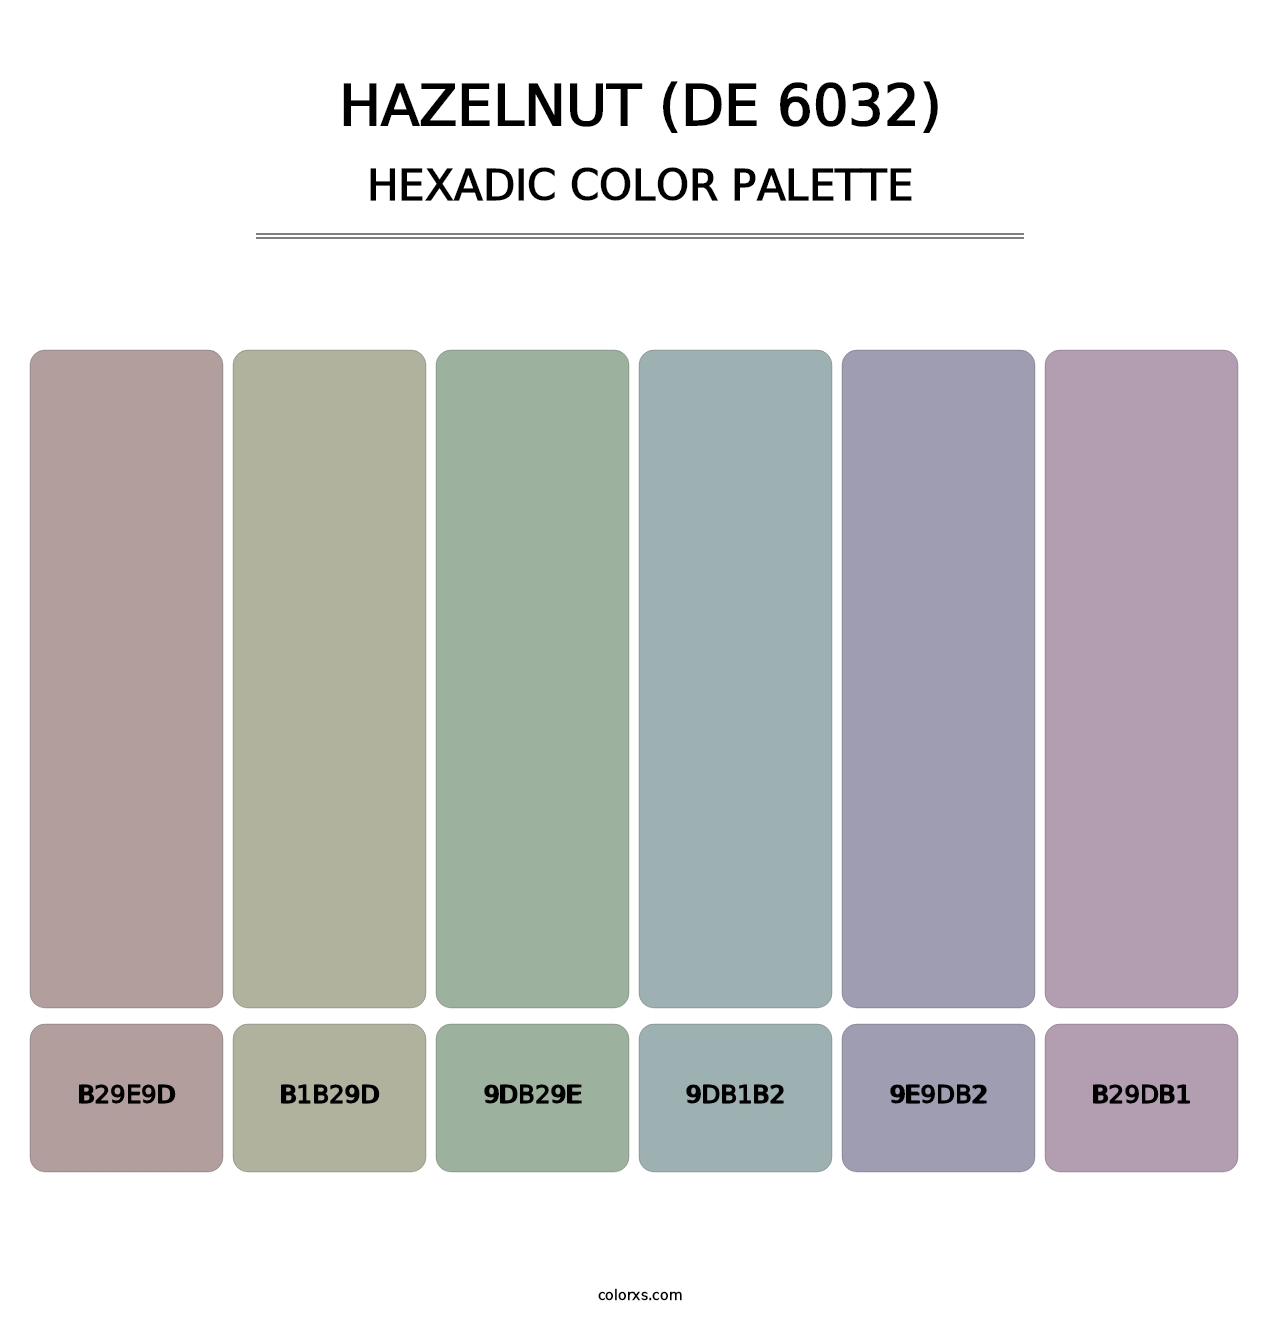 Hazelnut (DE 6032) - Hexadic Color Palette